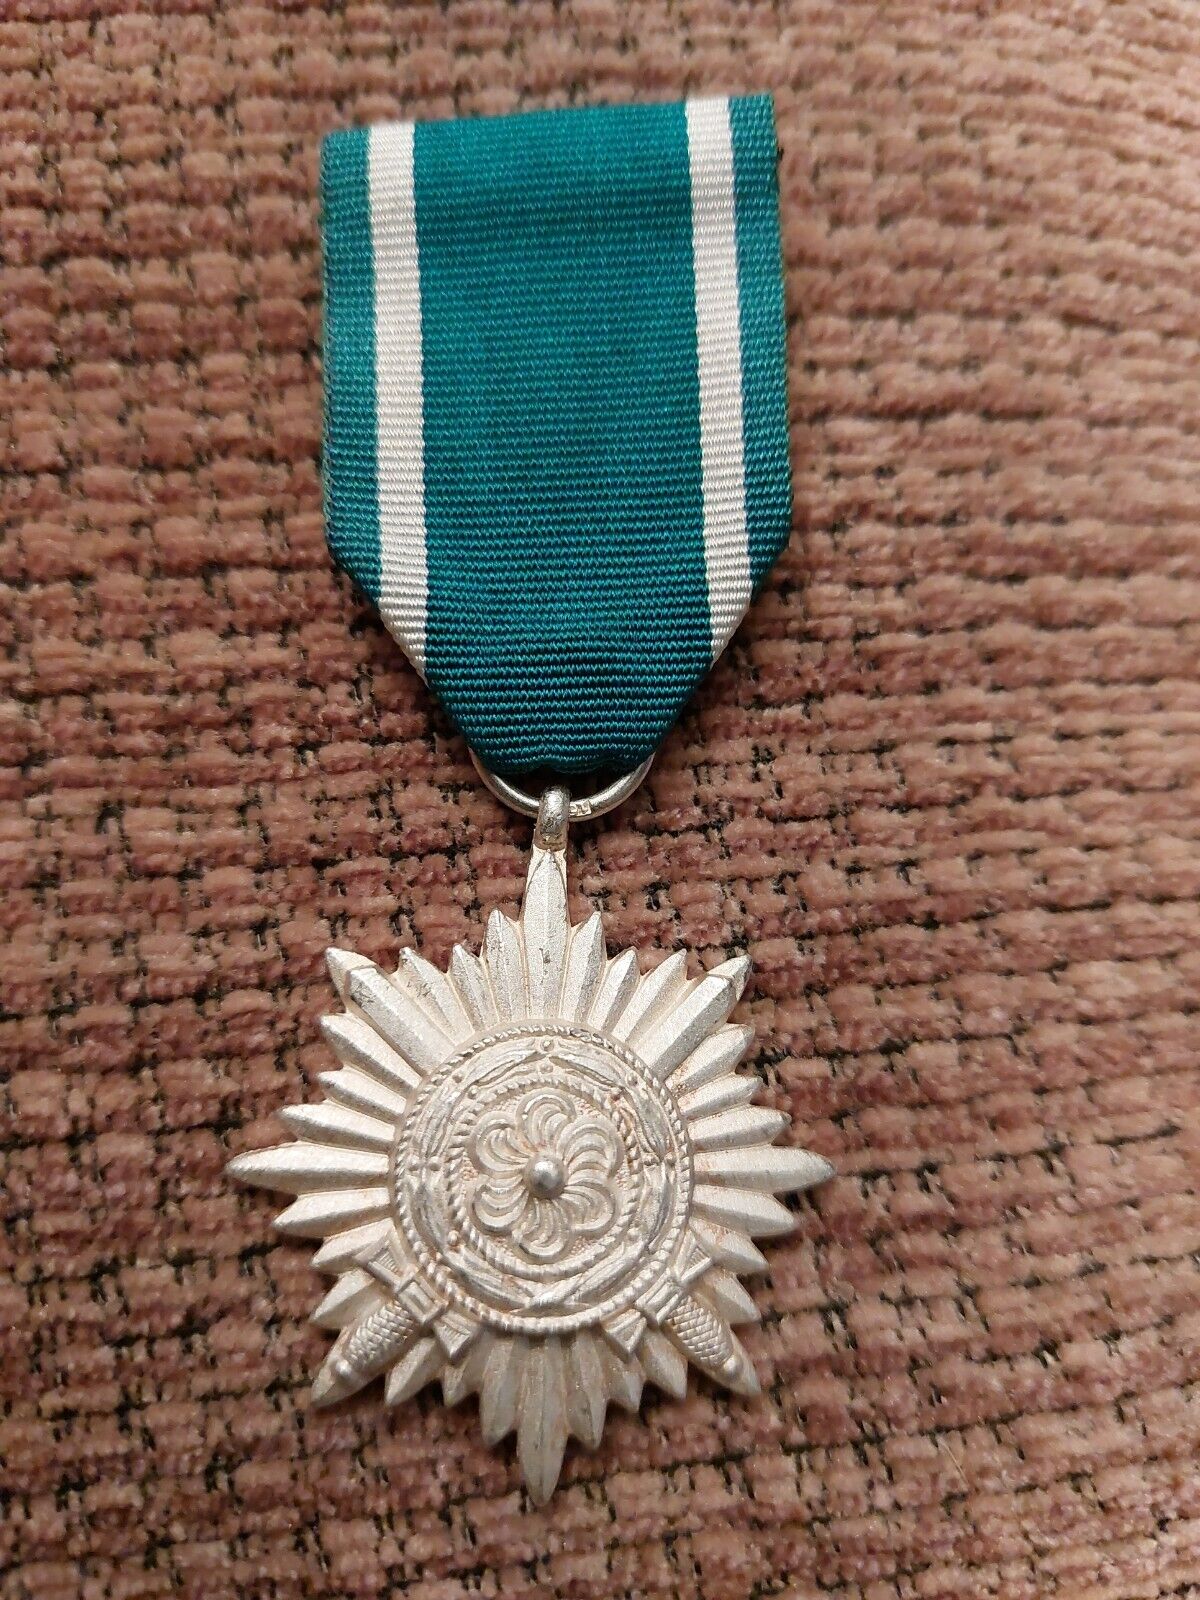 WW2 German/Eastern Volunteers/Ostvolk Medal